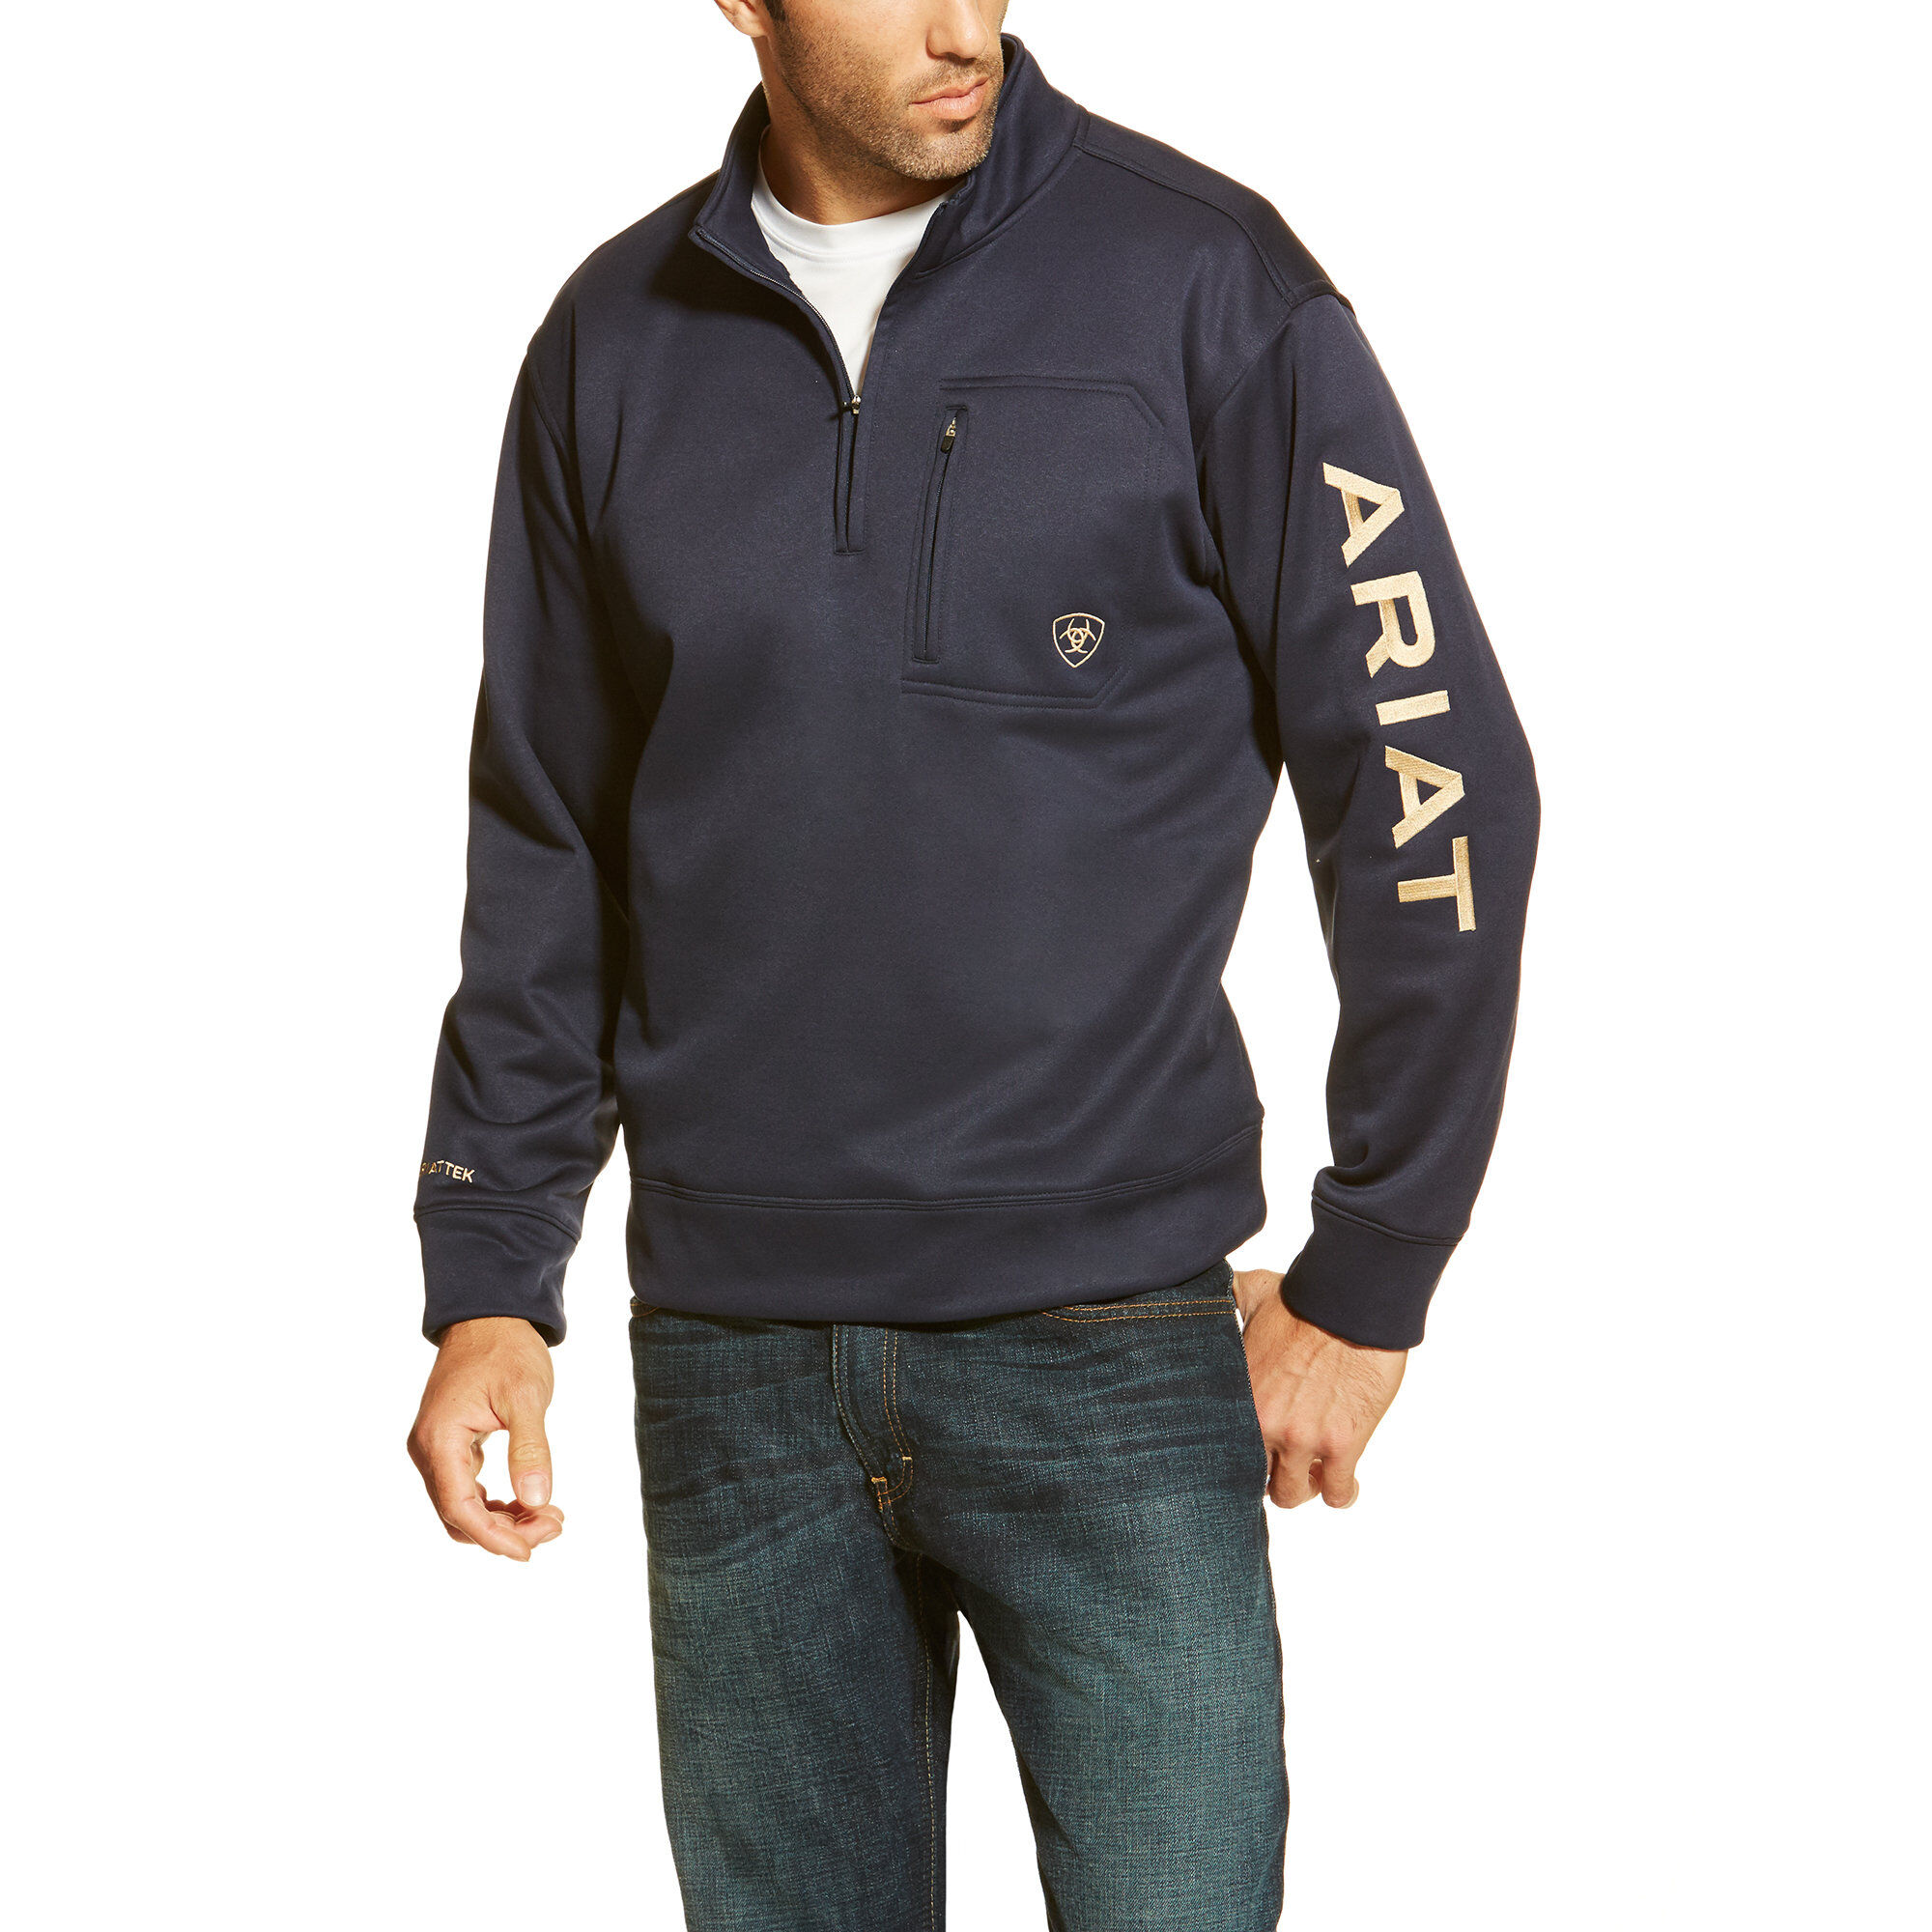 Ariat® Men's Team Logo Black 1/4 Zip Tek Fleece Sweatshirt 10013114